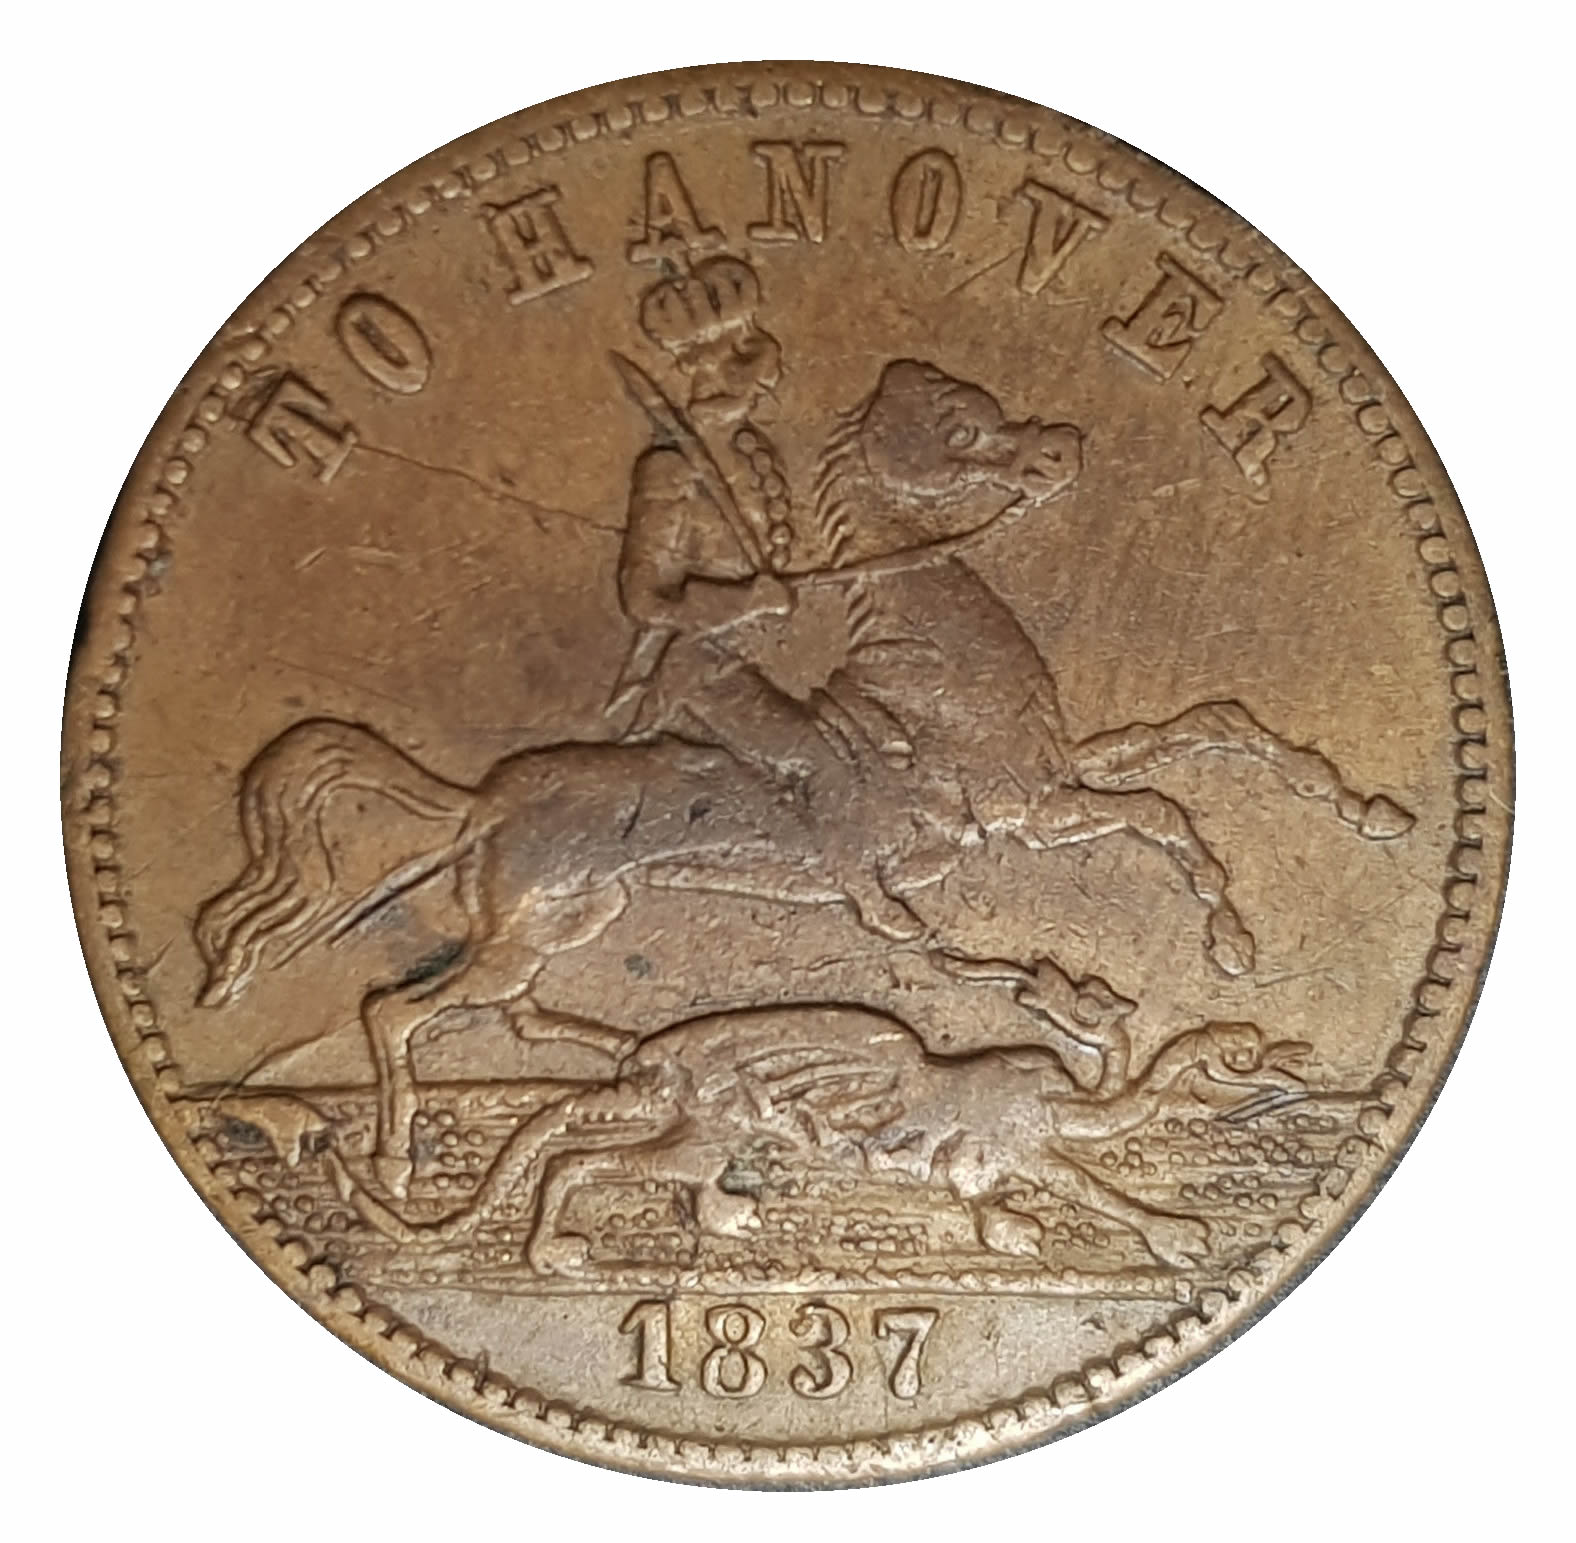 queen victoria coin 1837 value